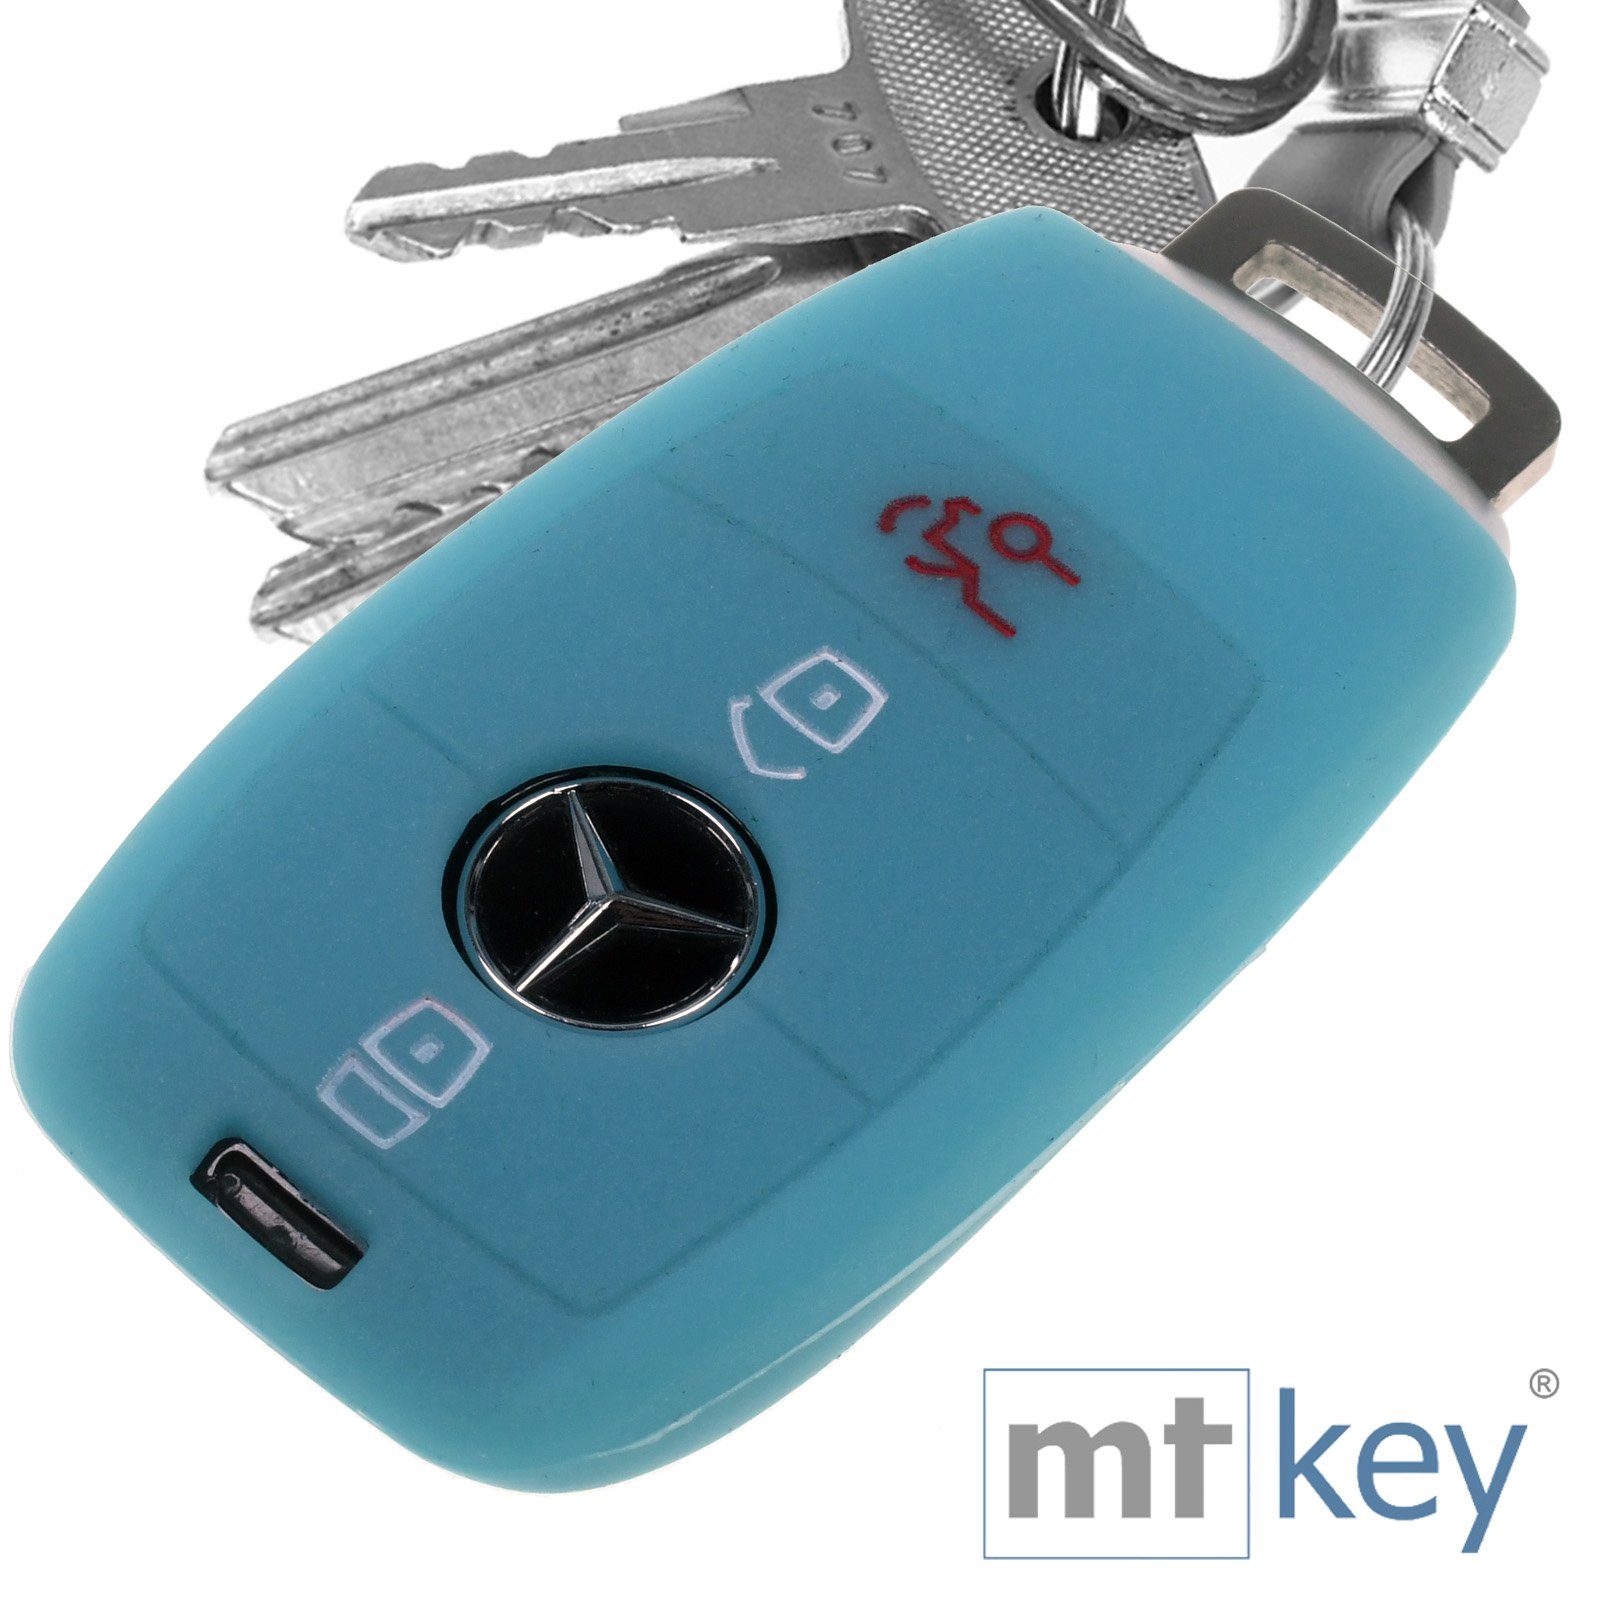 KEYLESS Silikon fluoreszierend Benz E-Klasse Softcase Autoschlüssel Blau, mt-key S213 Schlüsseltasche A238 Schutzhülle Mercedes 3 Tasten C238 für W213